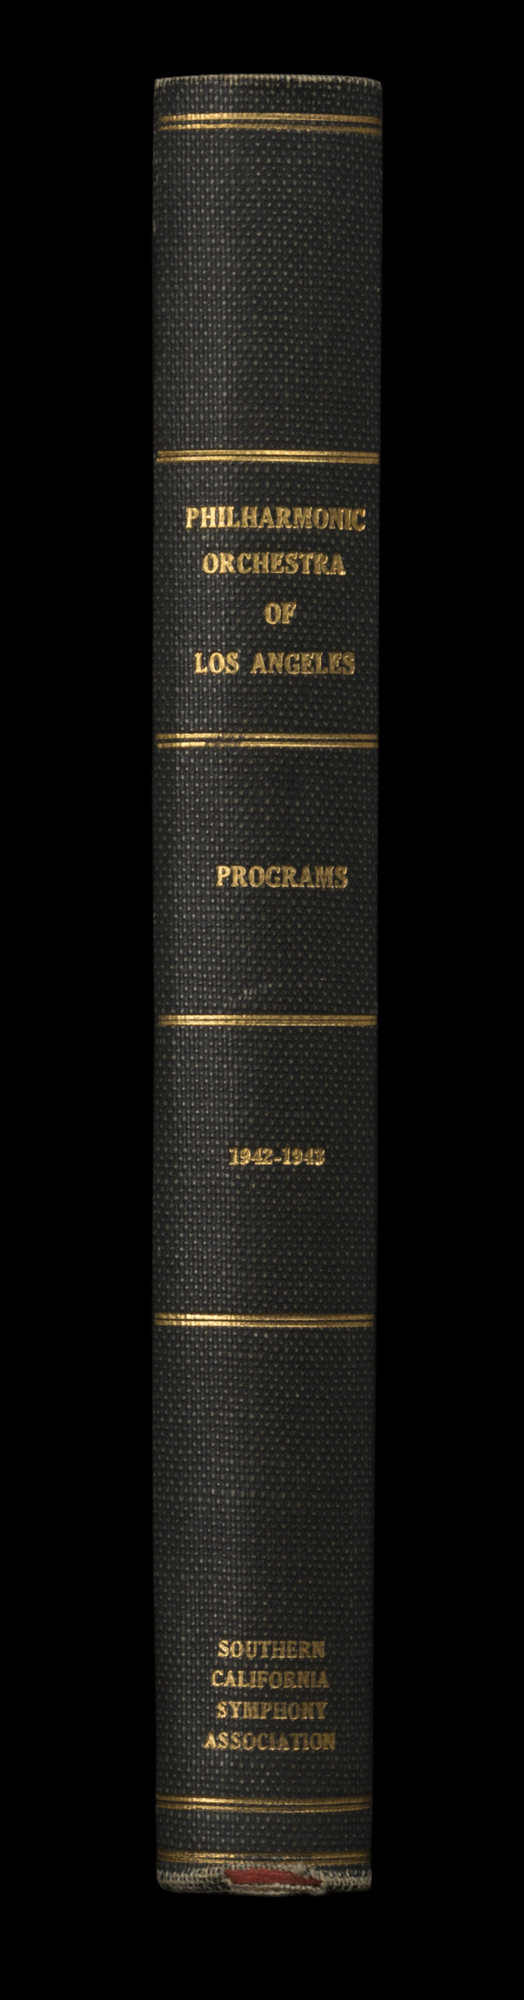 LAPO_ProgramBook_Spine_1942-1943.jpg